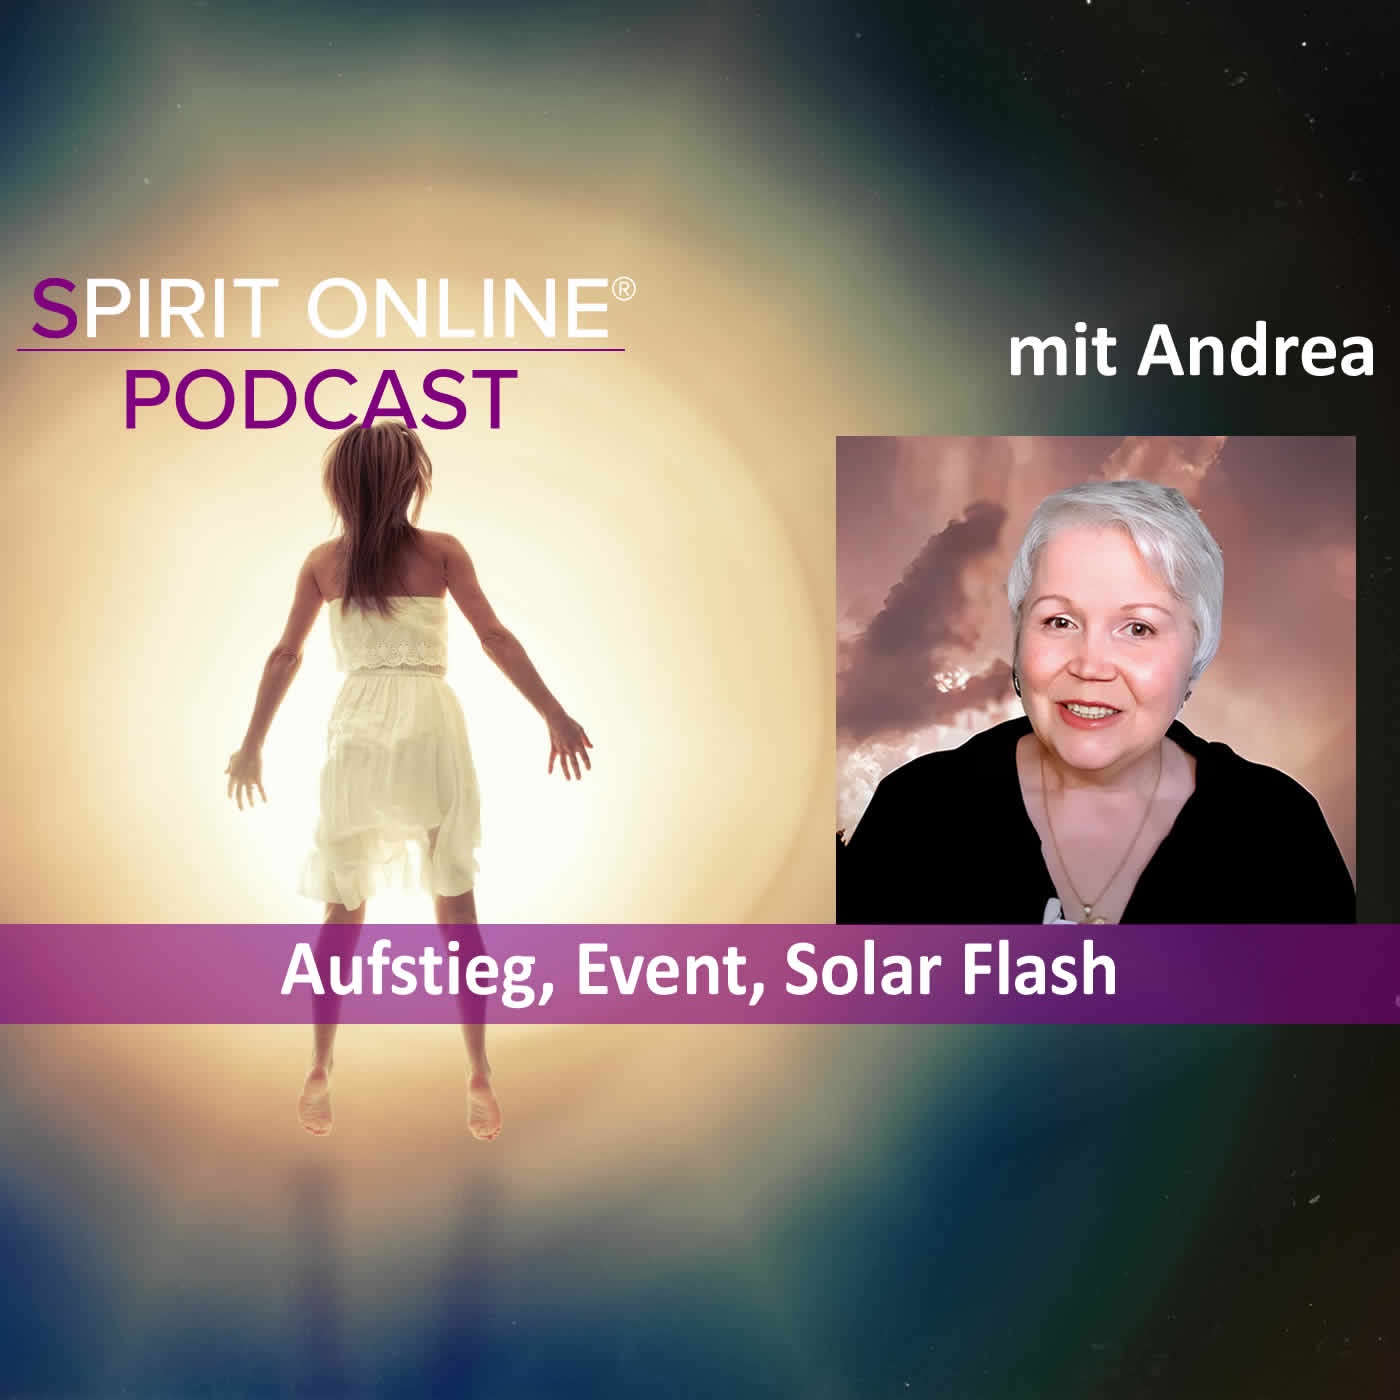 Aufstieg, Event, Solar Flash mit Andrea